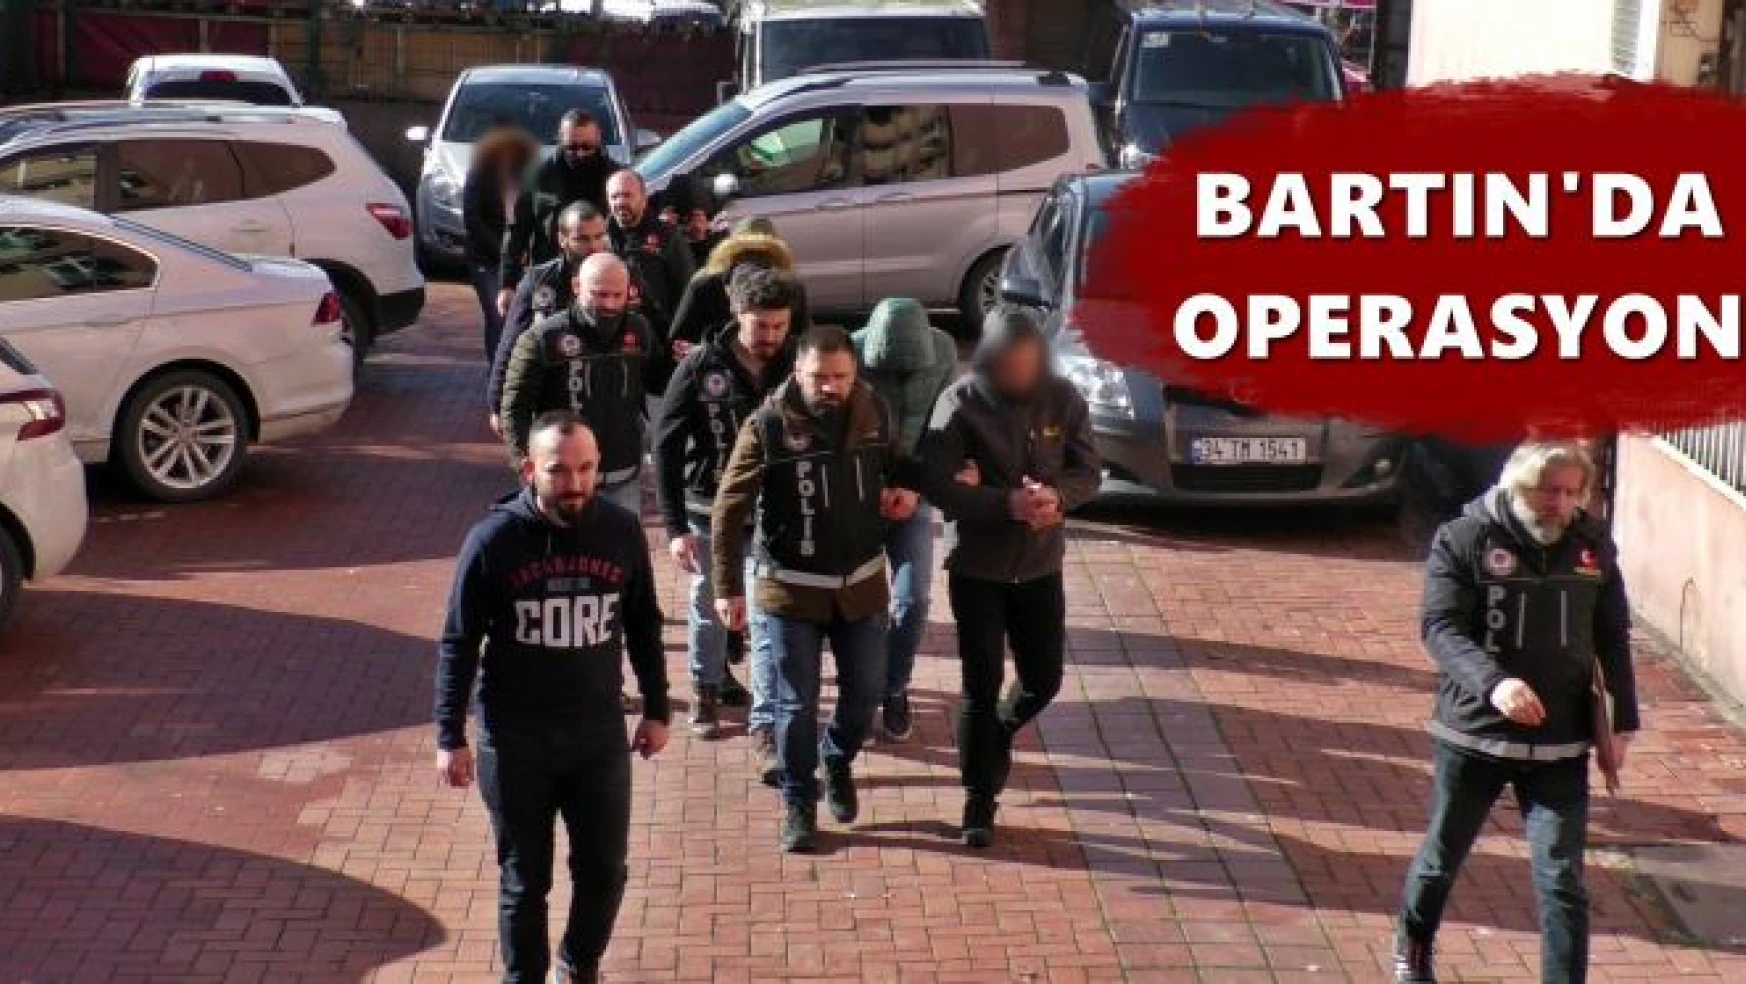 Bartın'da operasyon, 5 kişi tutuklandı